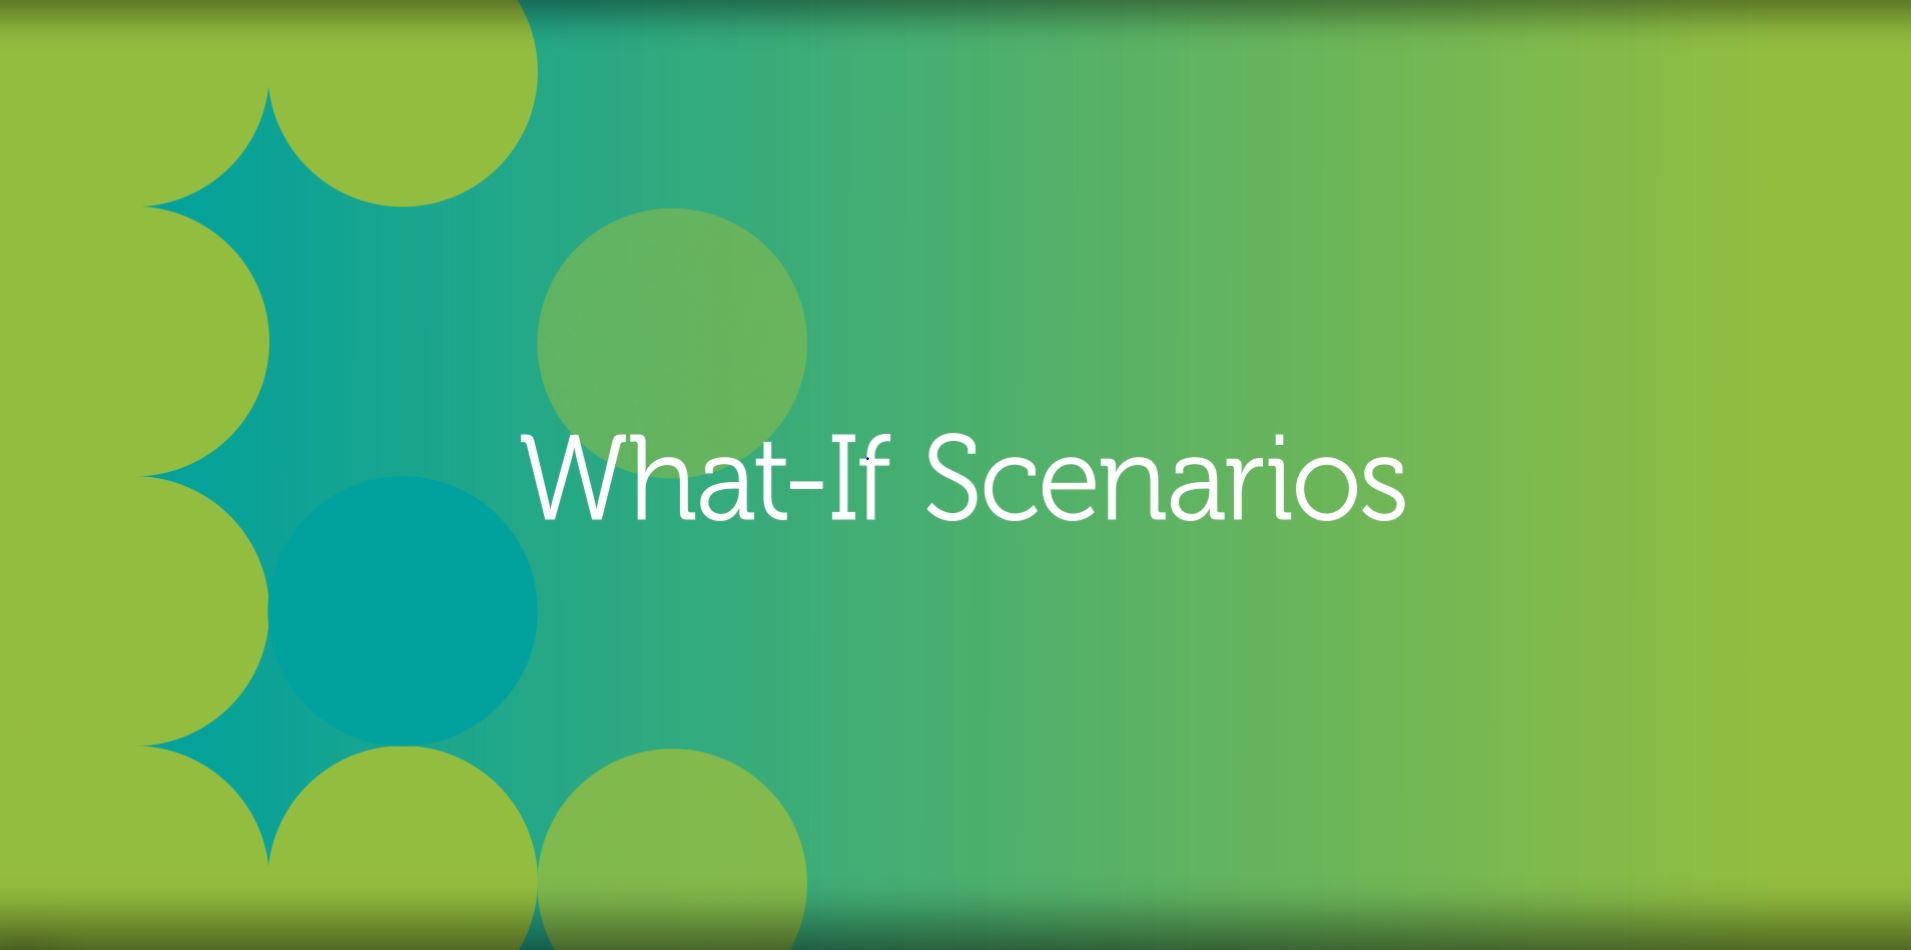 What-if Scenarios